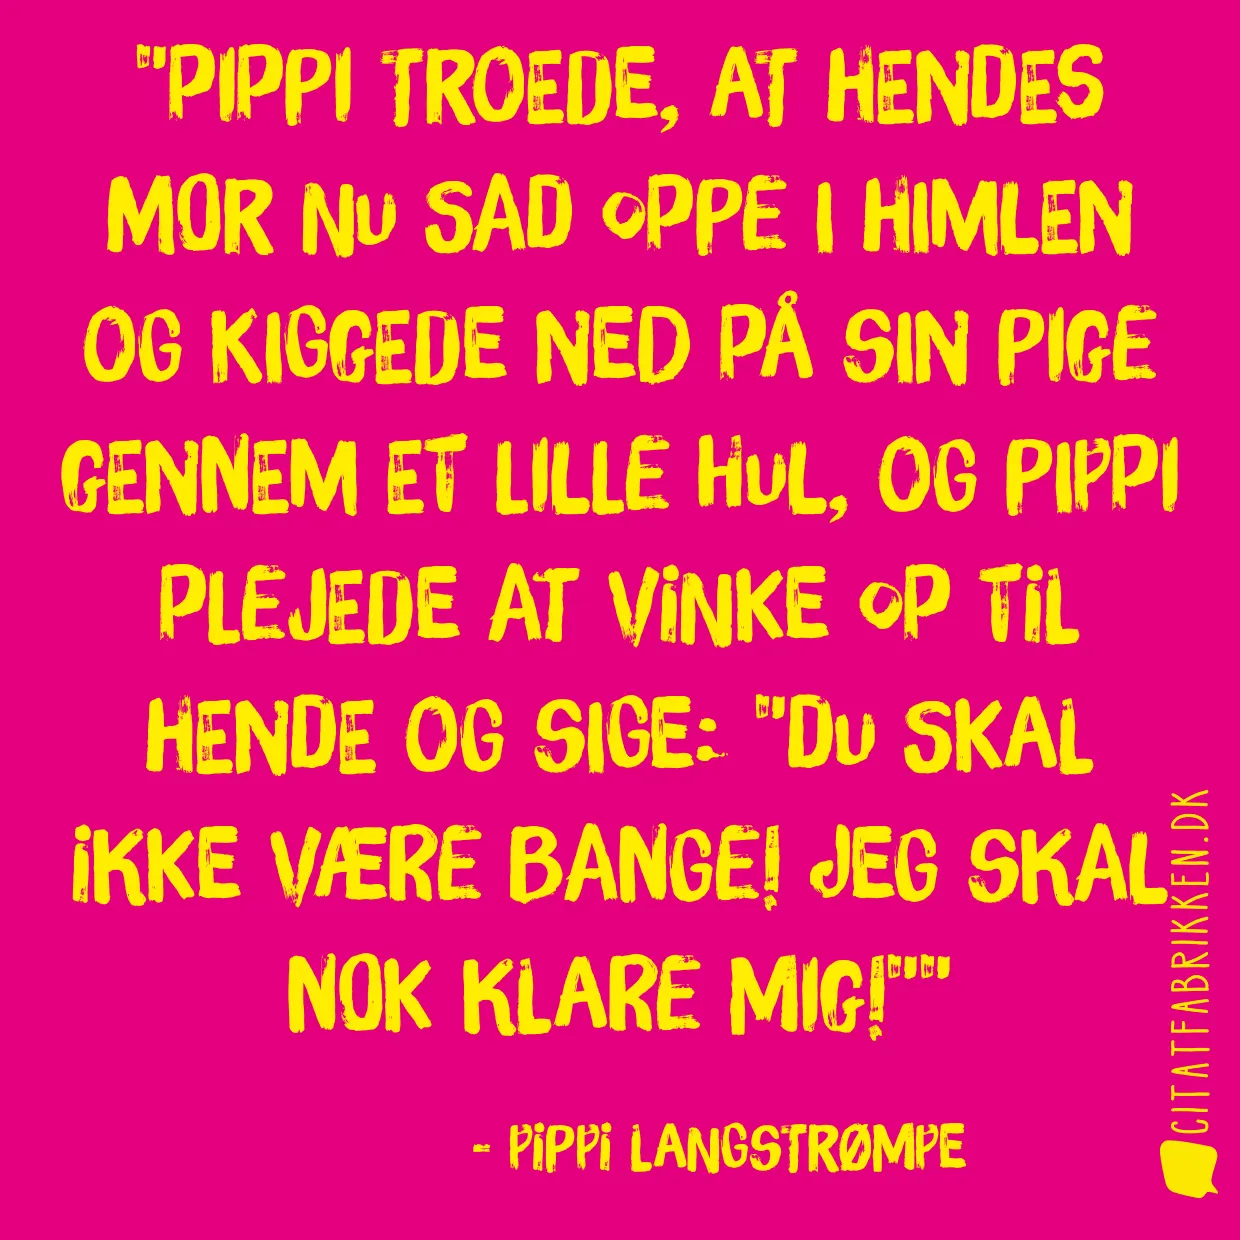 Pippi troede, at hendes mor nu sad oppe i himlen og kiggede ned på sin pige gennem et lille hul, og Pippi plejede at vinke op til hende og sige: 